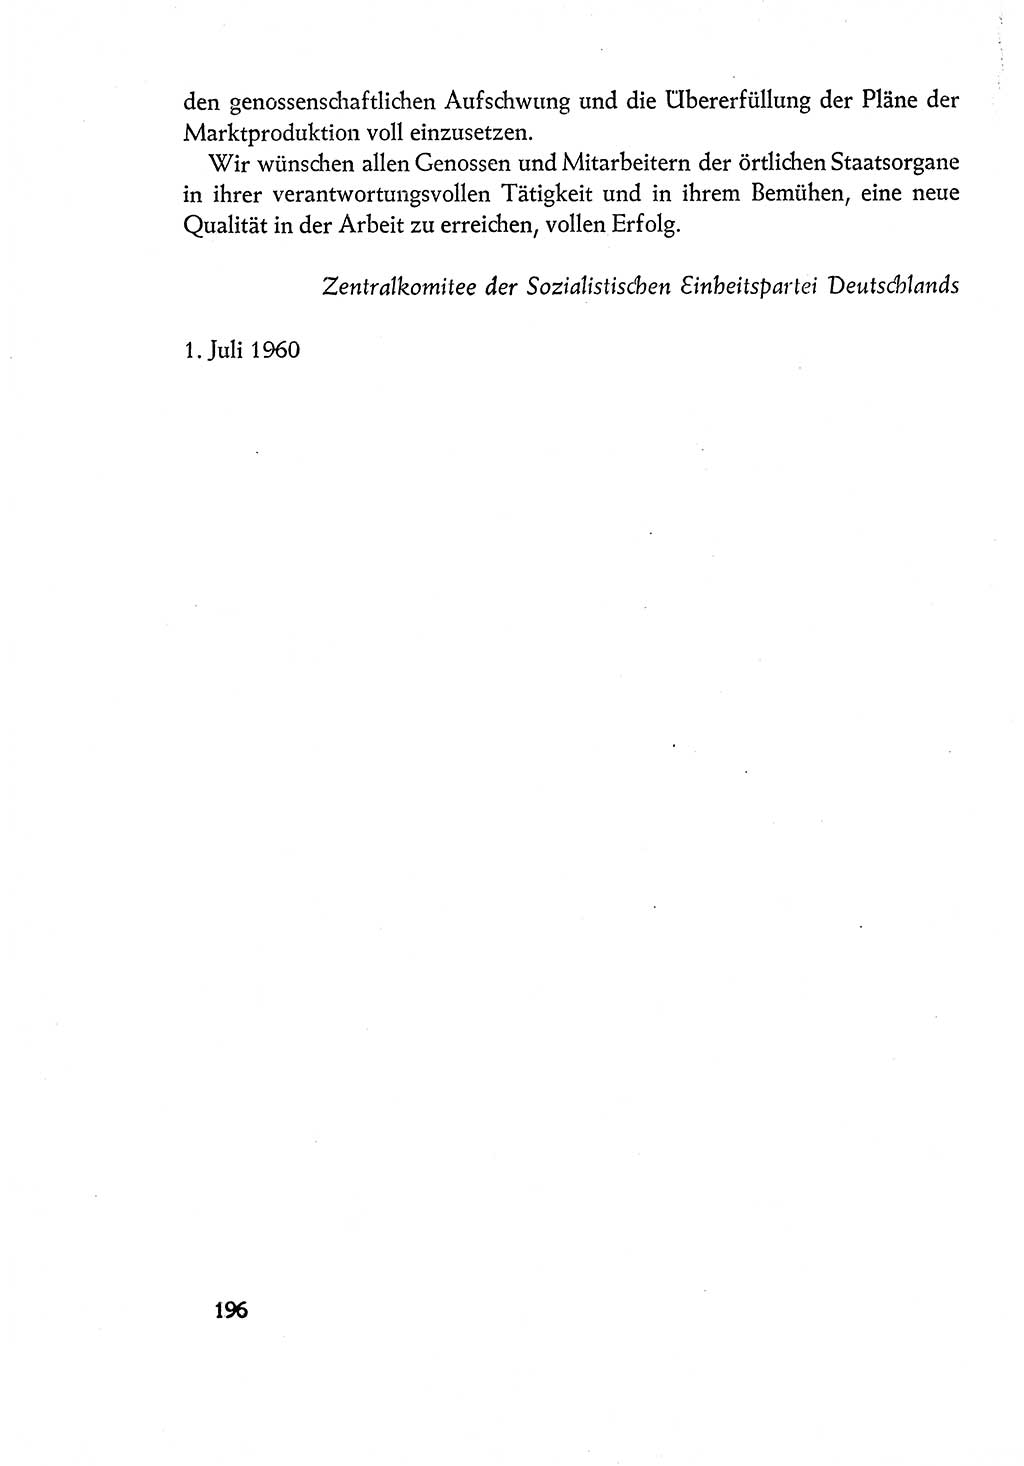 Dokumente der Sozialistischen Einheitspartei Deutschlands (SED) [Deutsche Demokratische Republik (DDR)] 1960-1961, Seite 196 (Dok. SED DDR 1960-1961, S. 196)